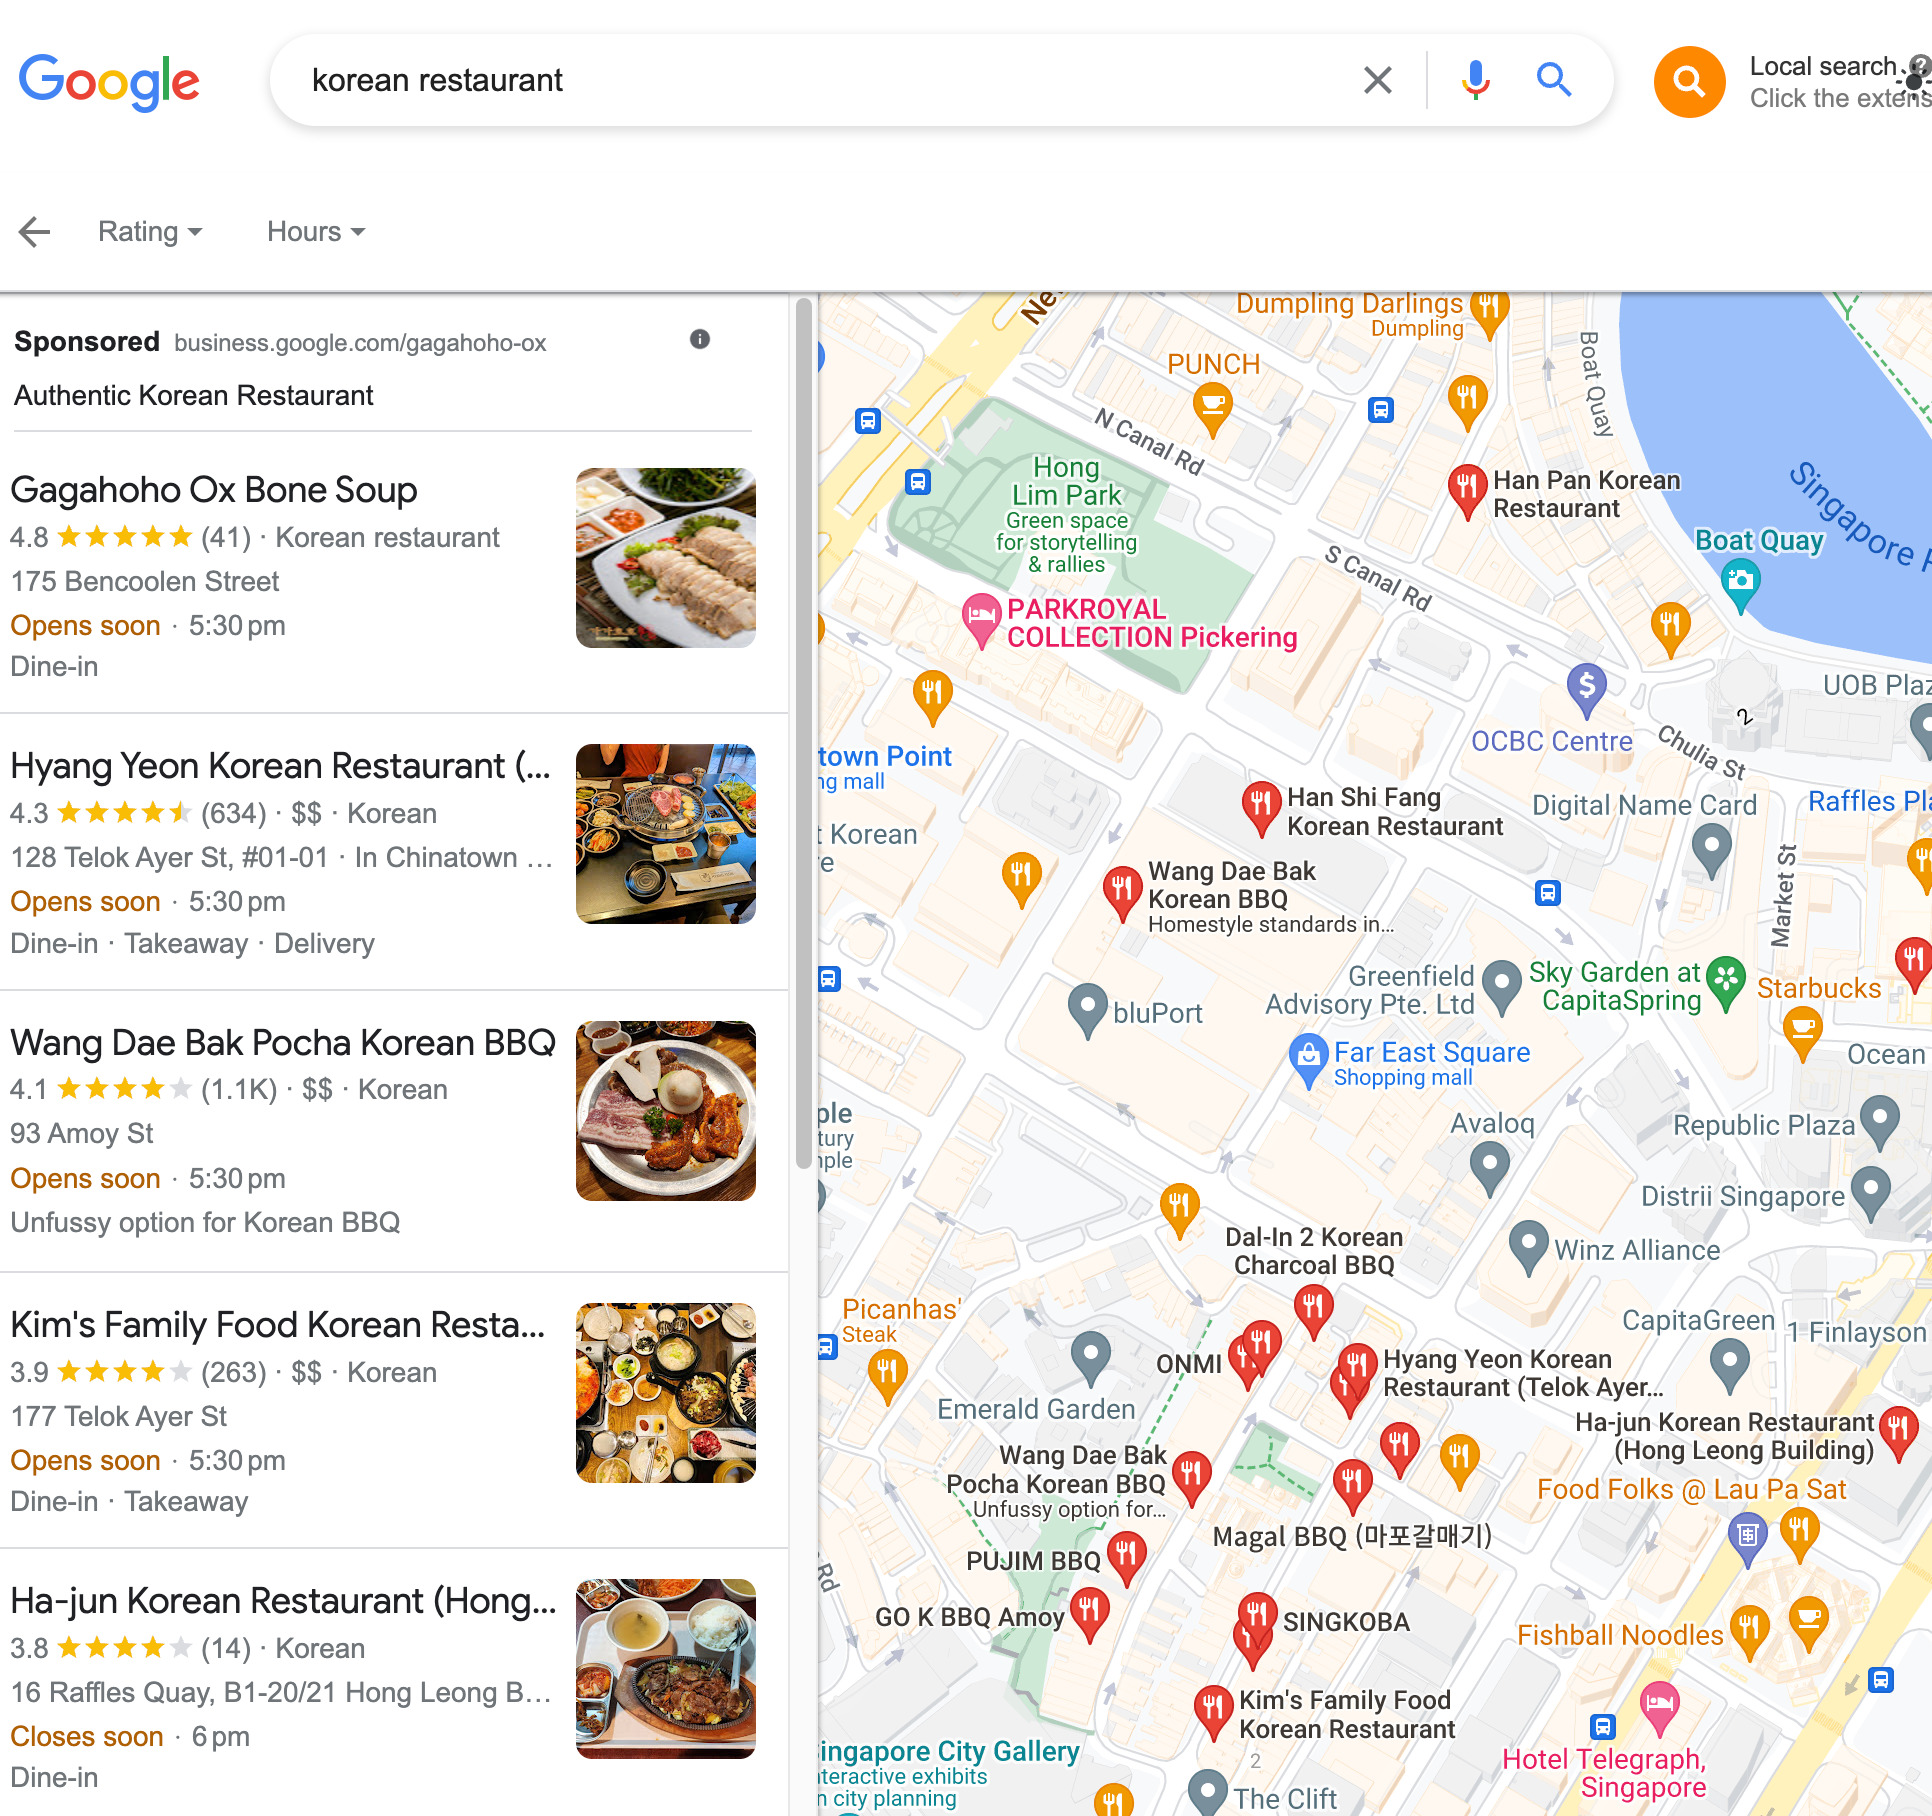 Korean restaurants on Google Maps